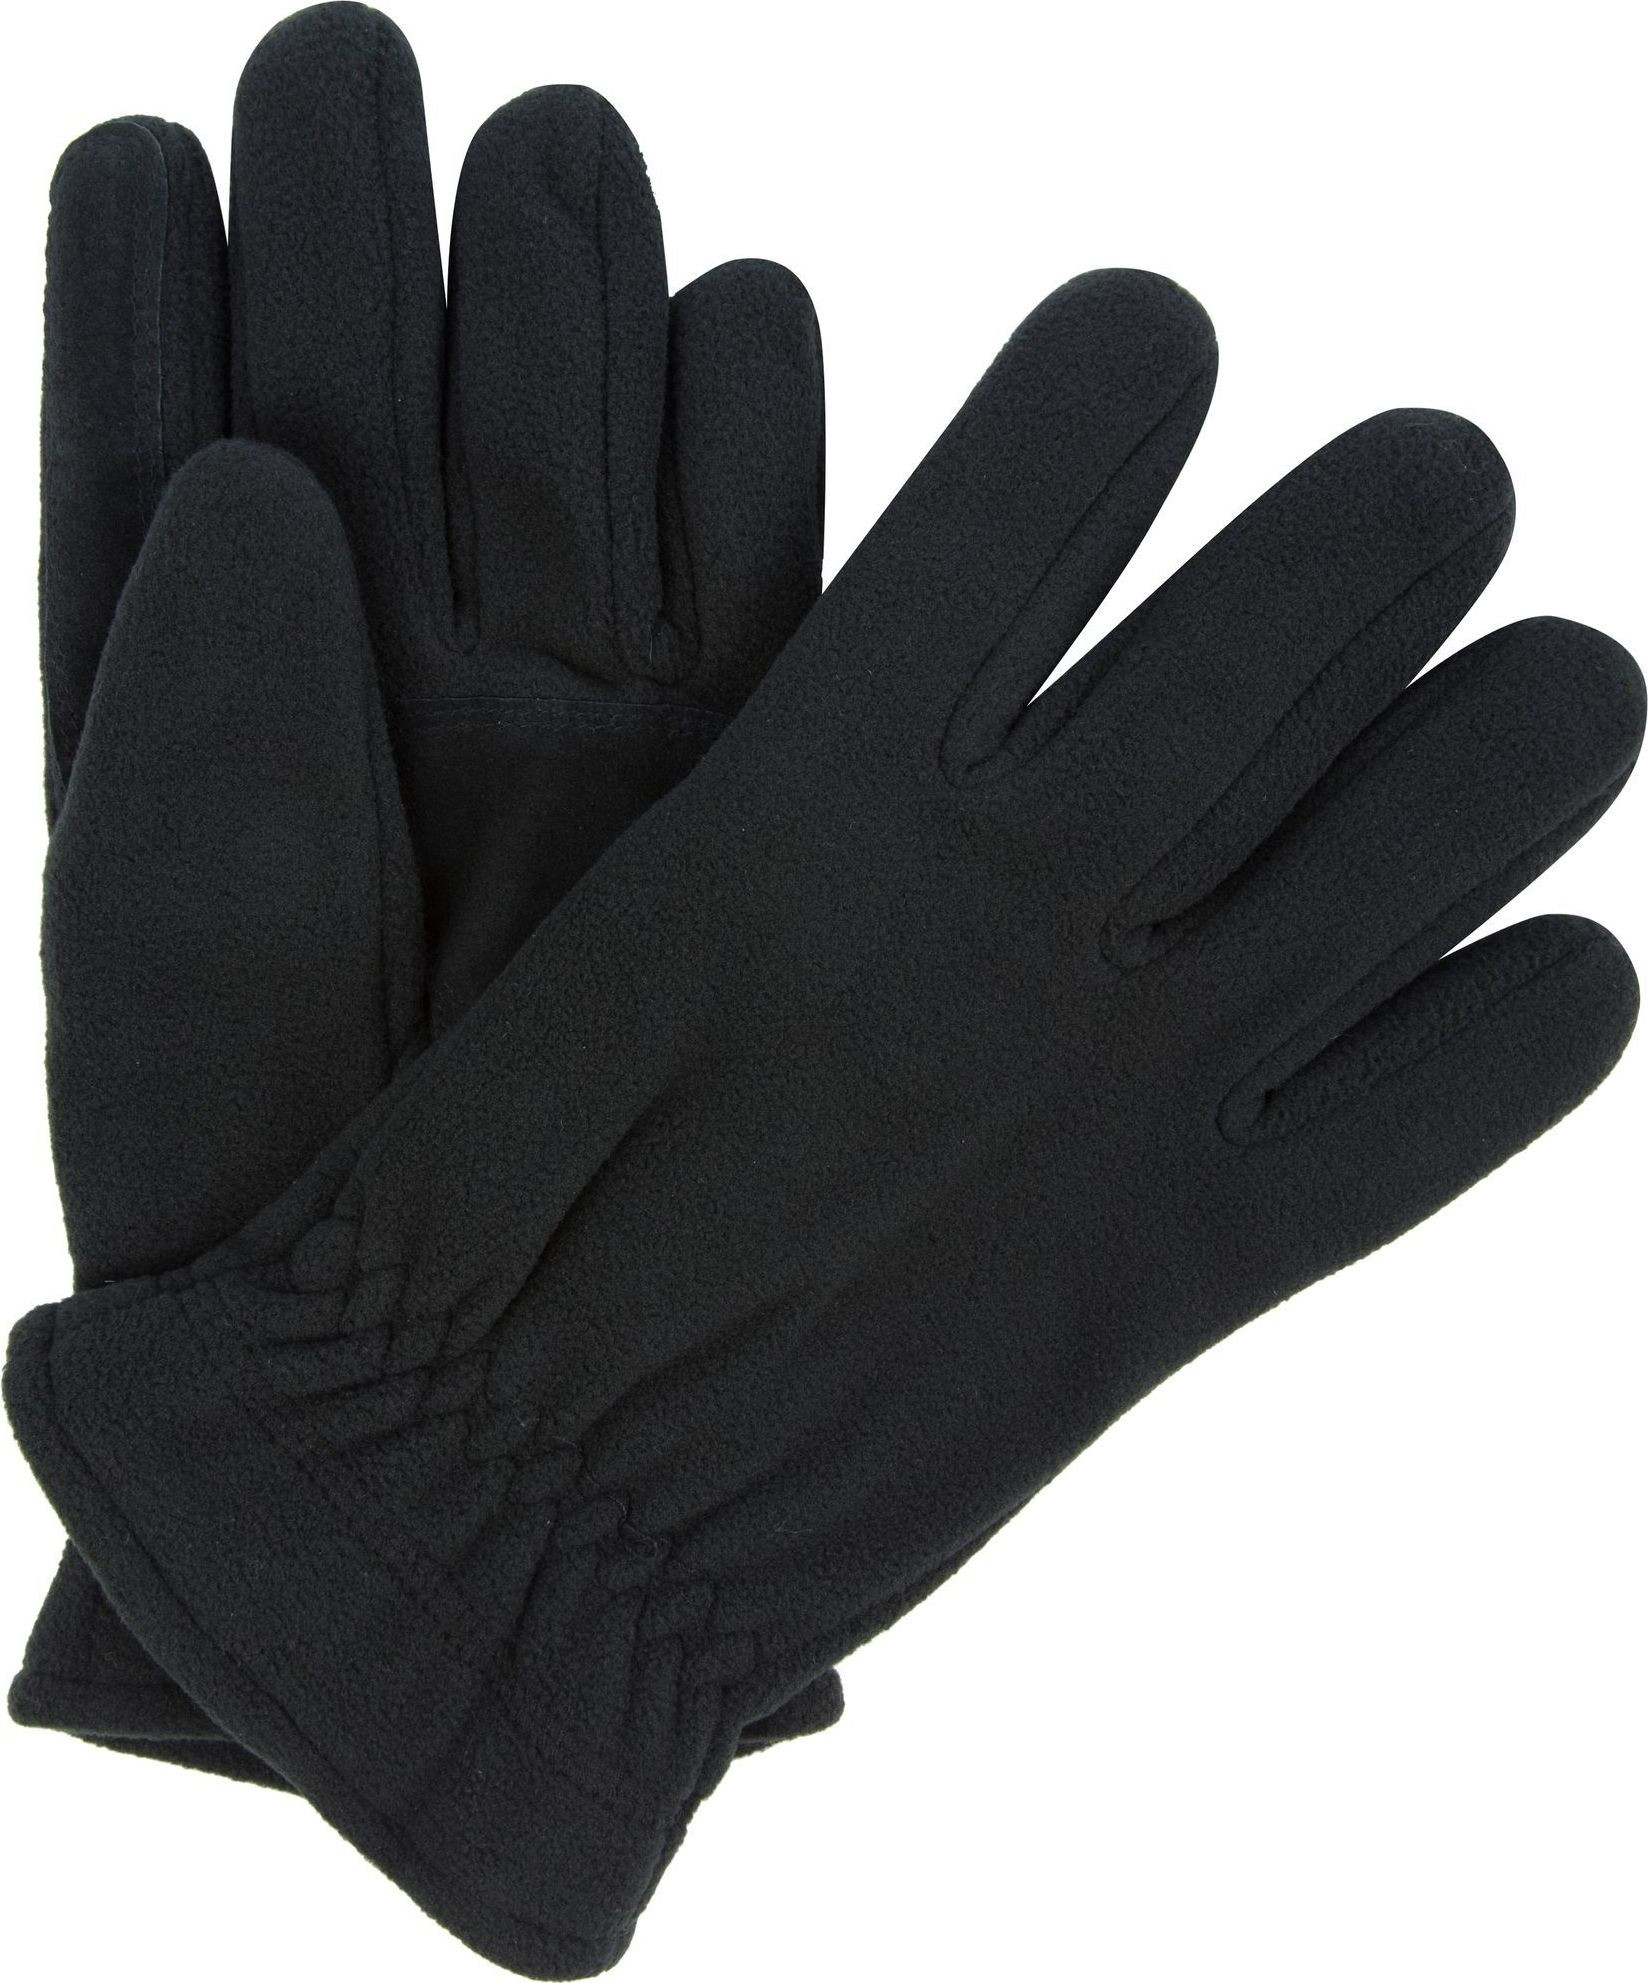 Pánské fleecové rukavice Regatta RMG014 Kingsdale Glove Černé Černá S-M